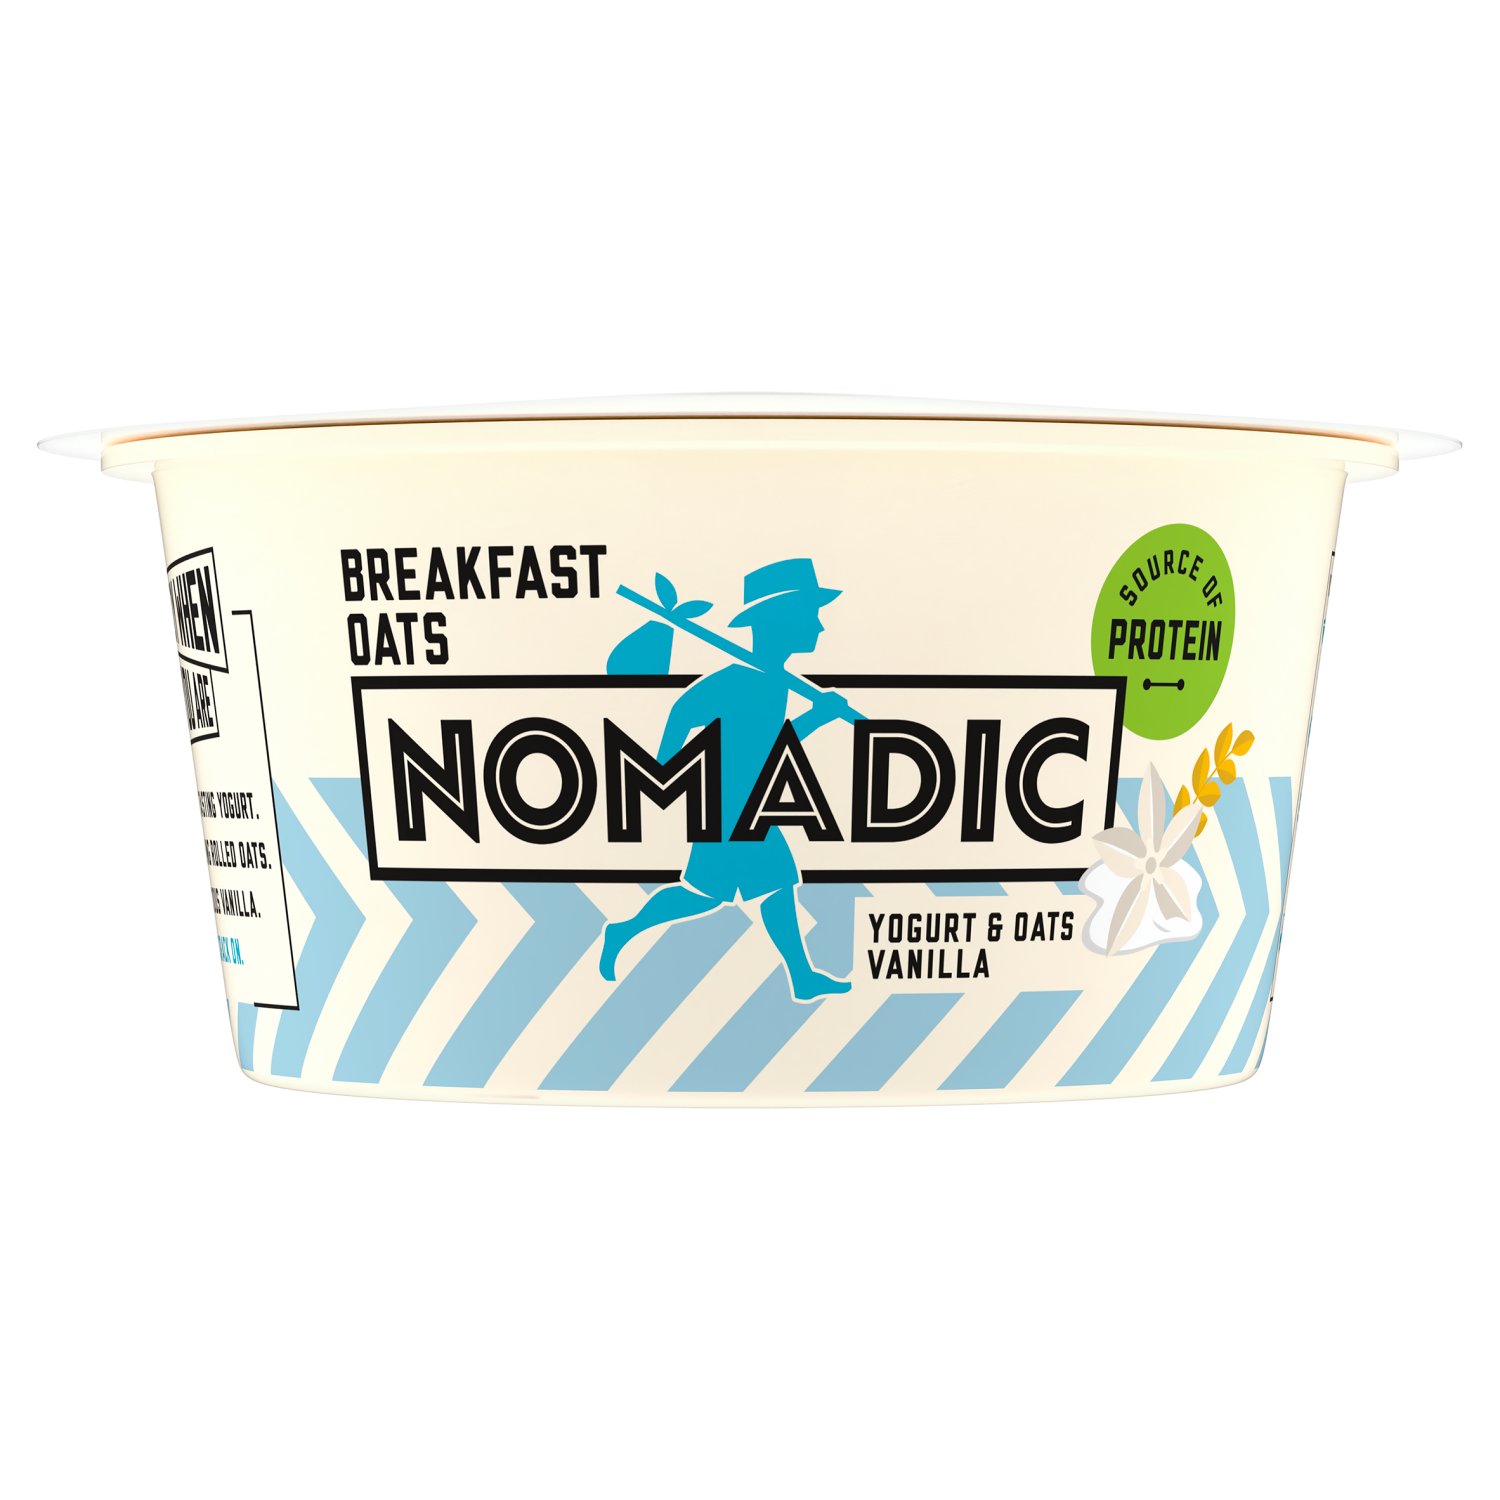 Nomadic Breakfast Oats Vanilla (140 g)